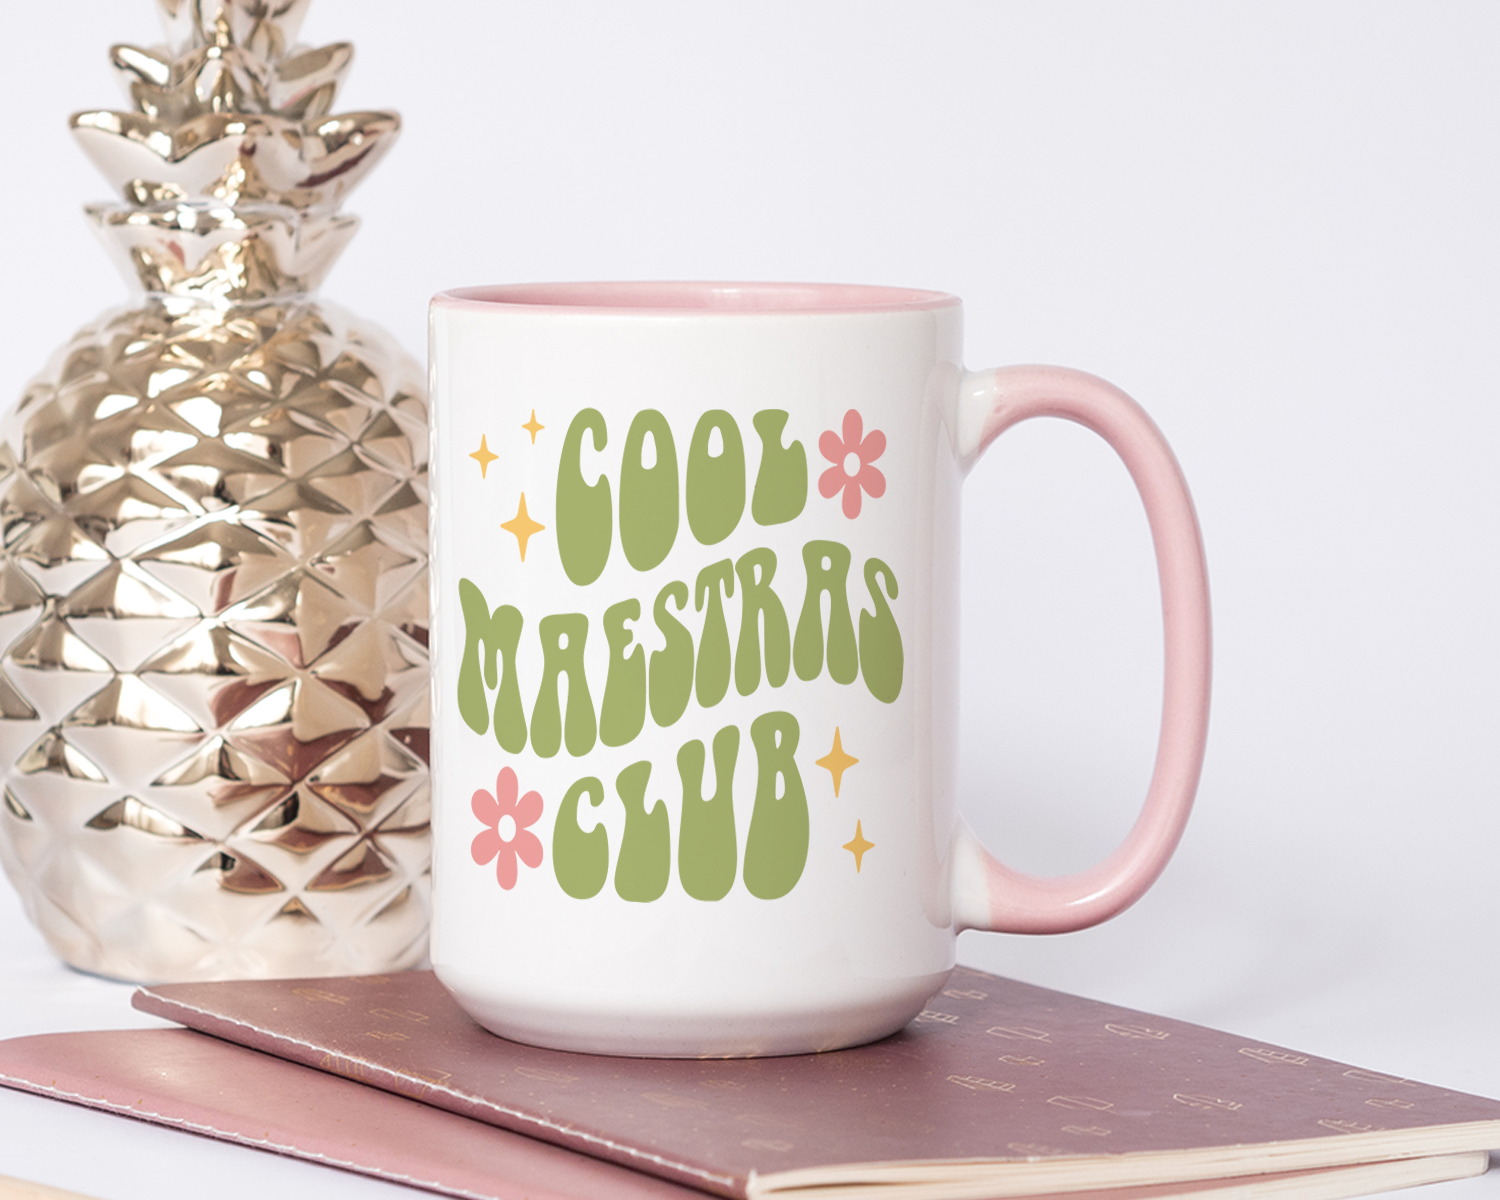 Cool Maestras Club Mug